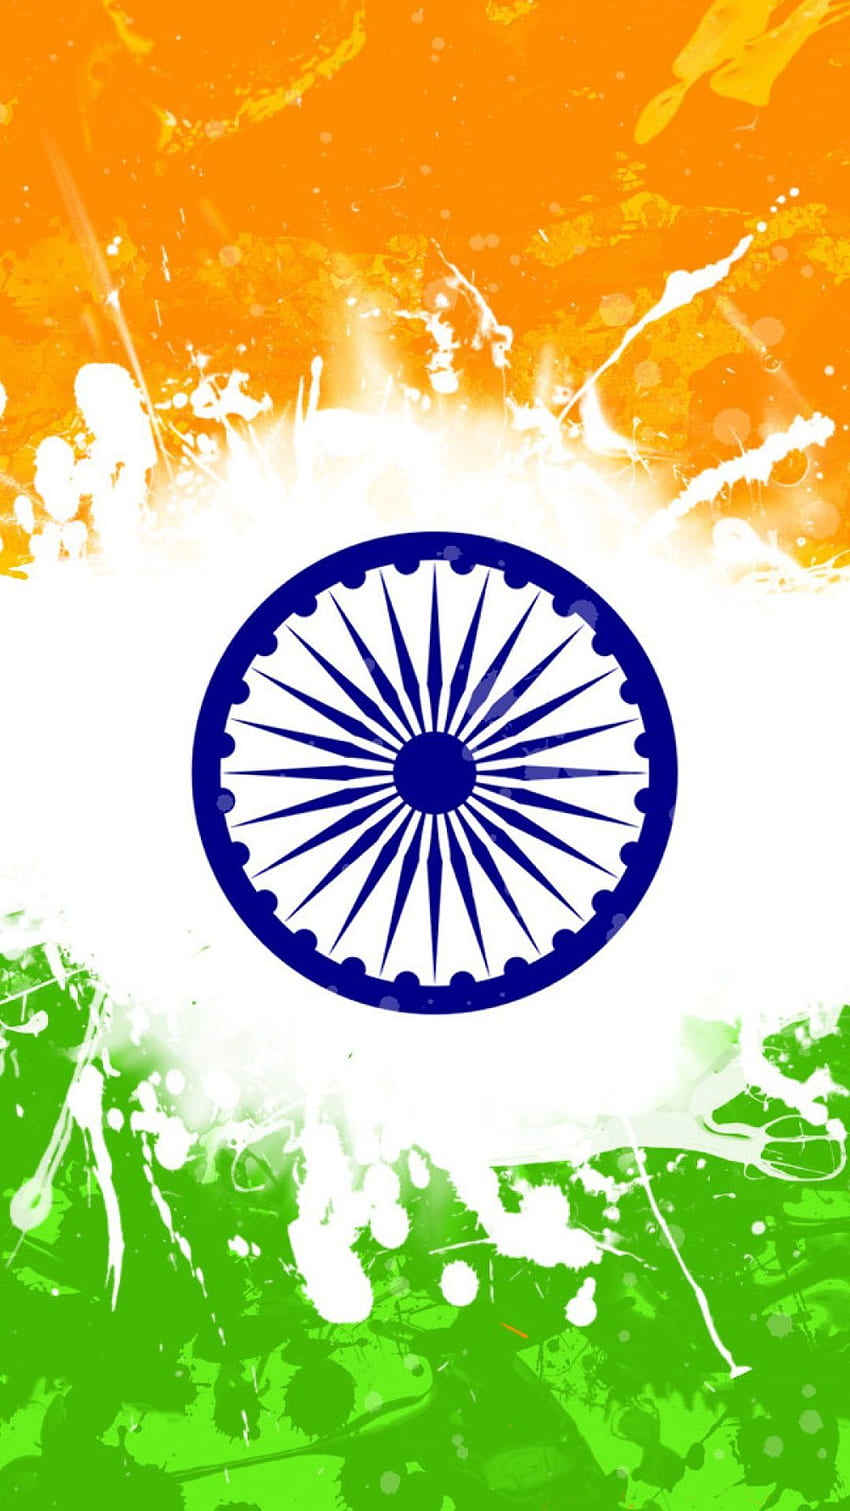 Indian National Flag Wallpaper 3D 69 images